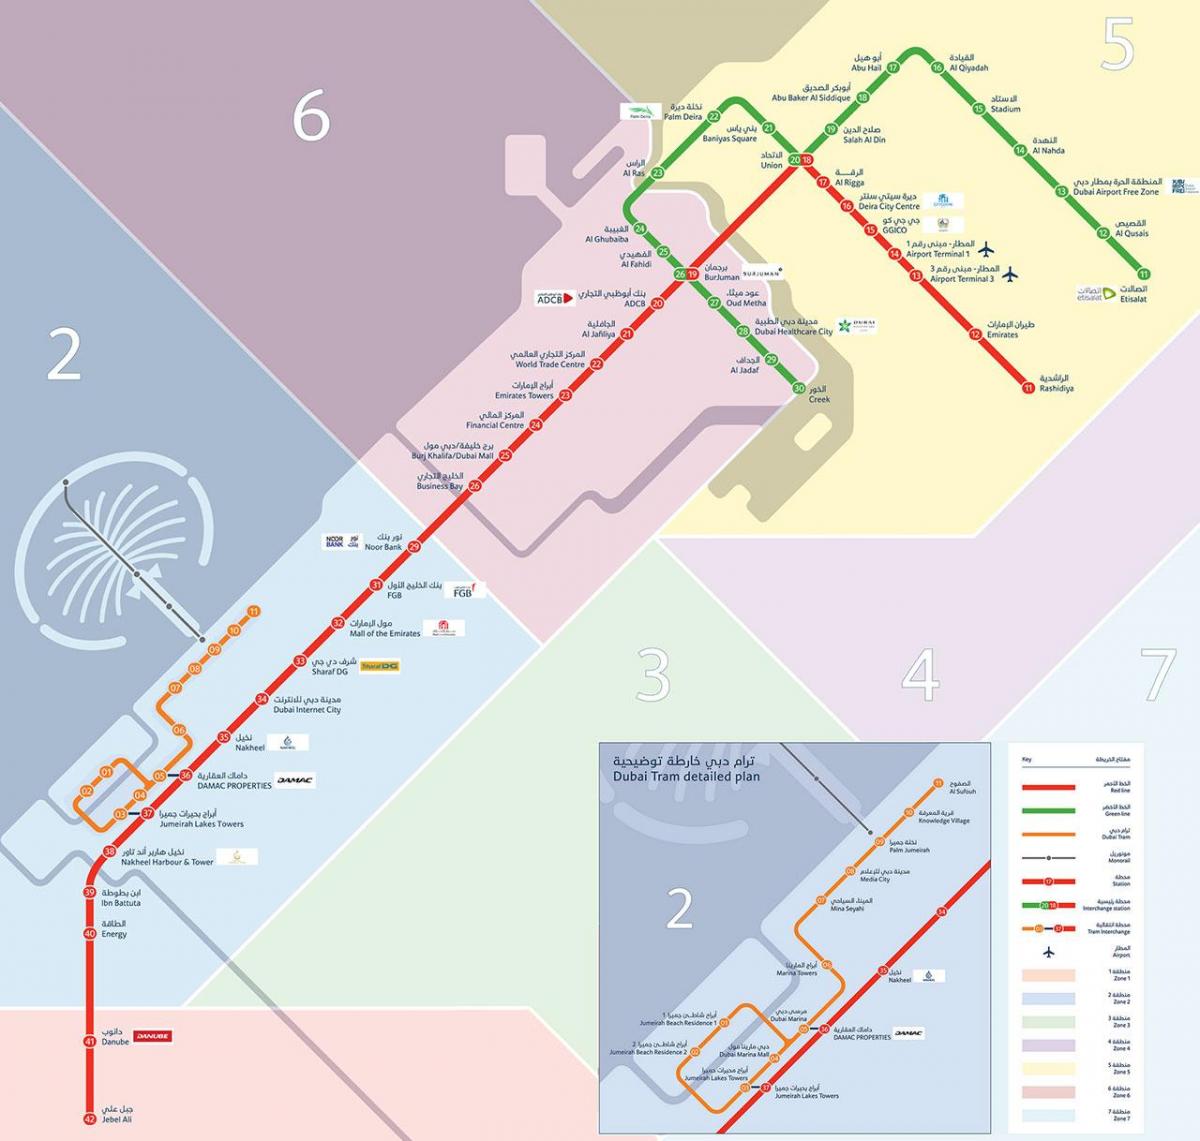 zemljevid podzemne železnice Dubaj